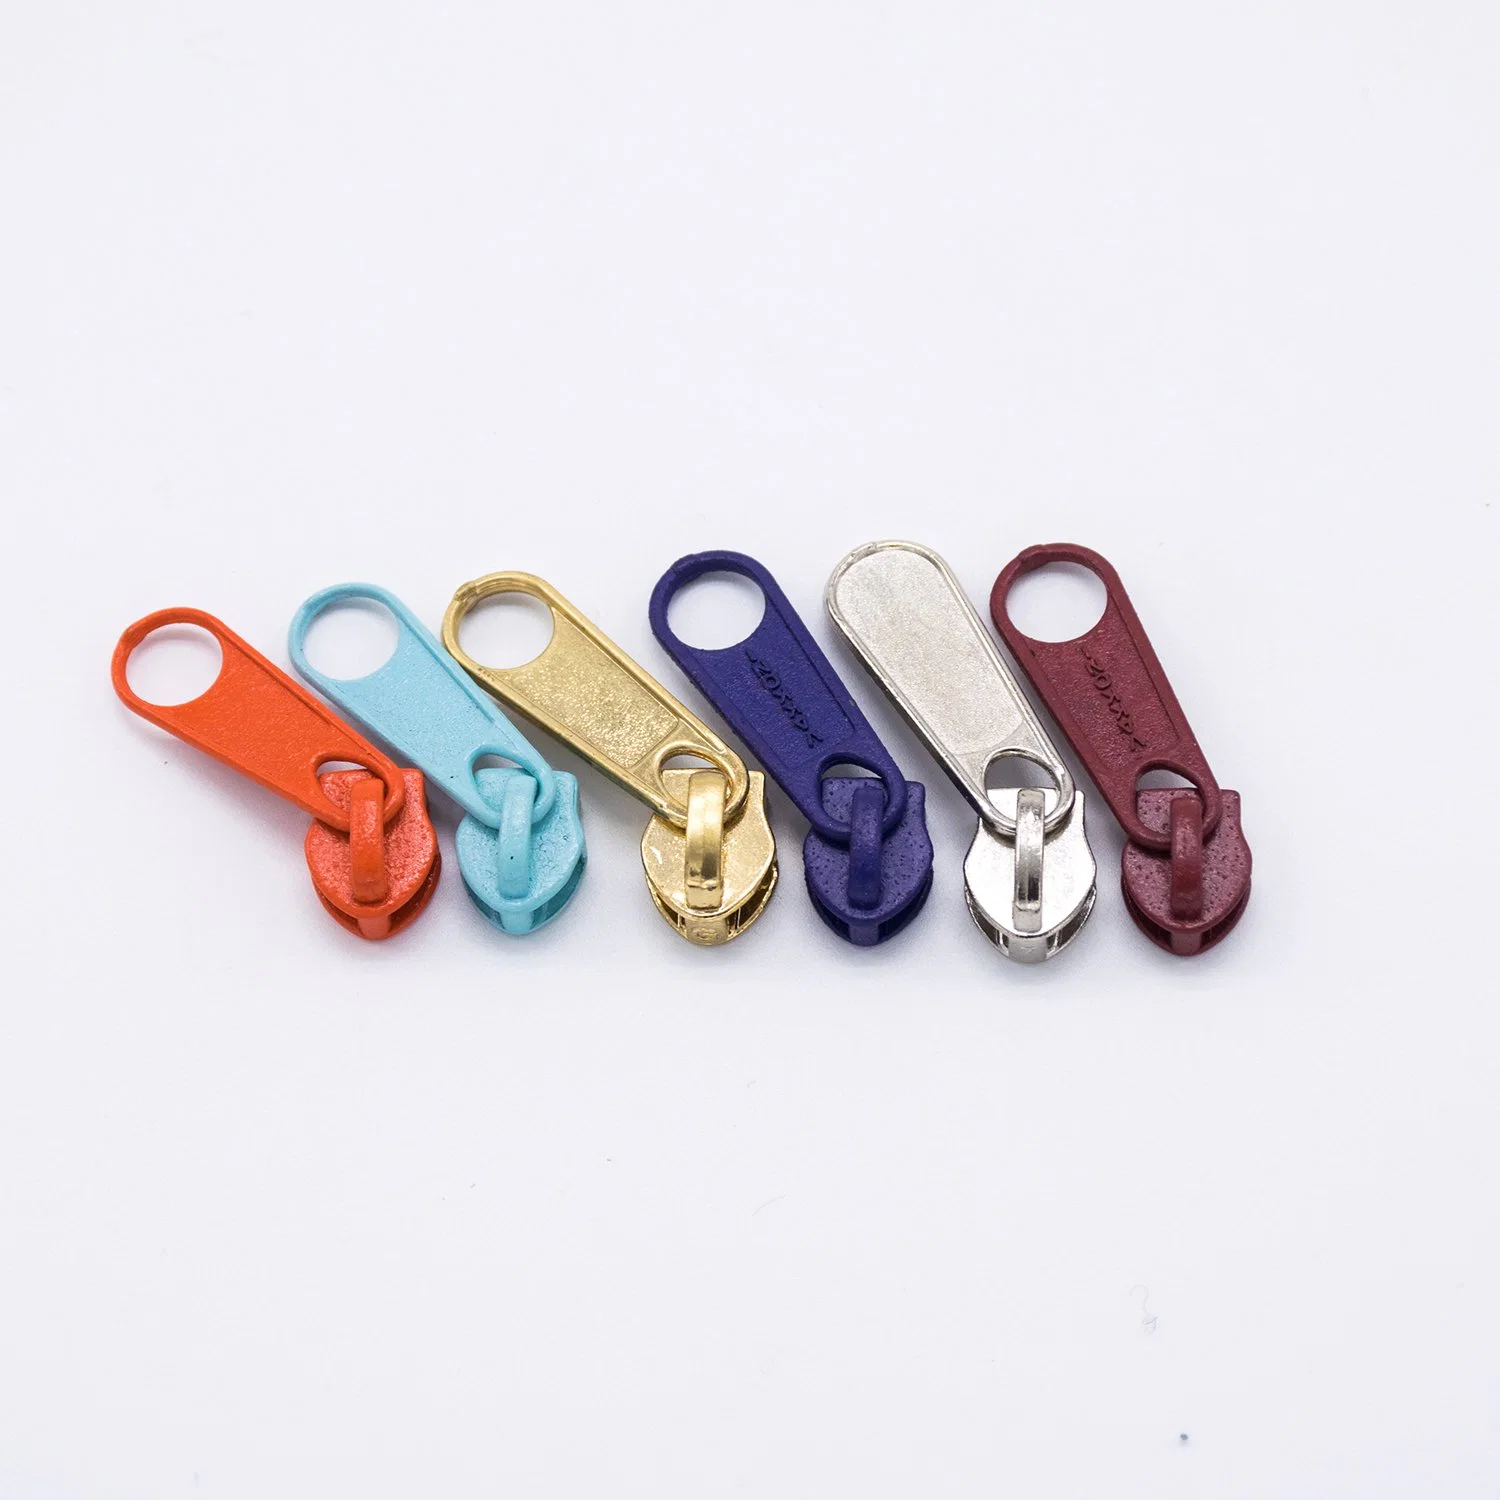 5# Colorful Metal Slider for Hangbag, Wallet